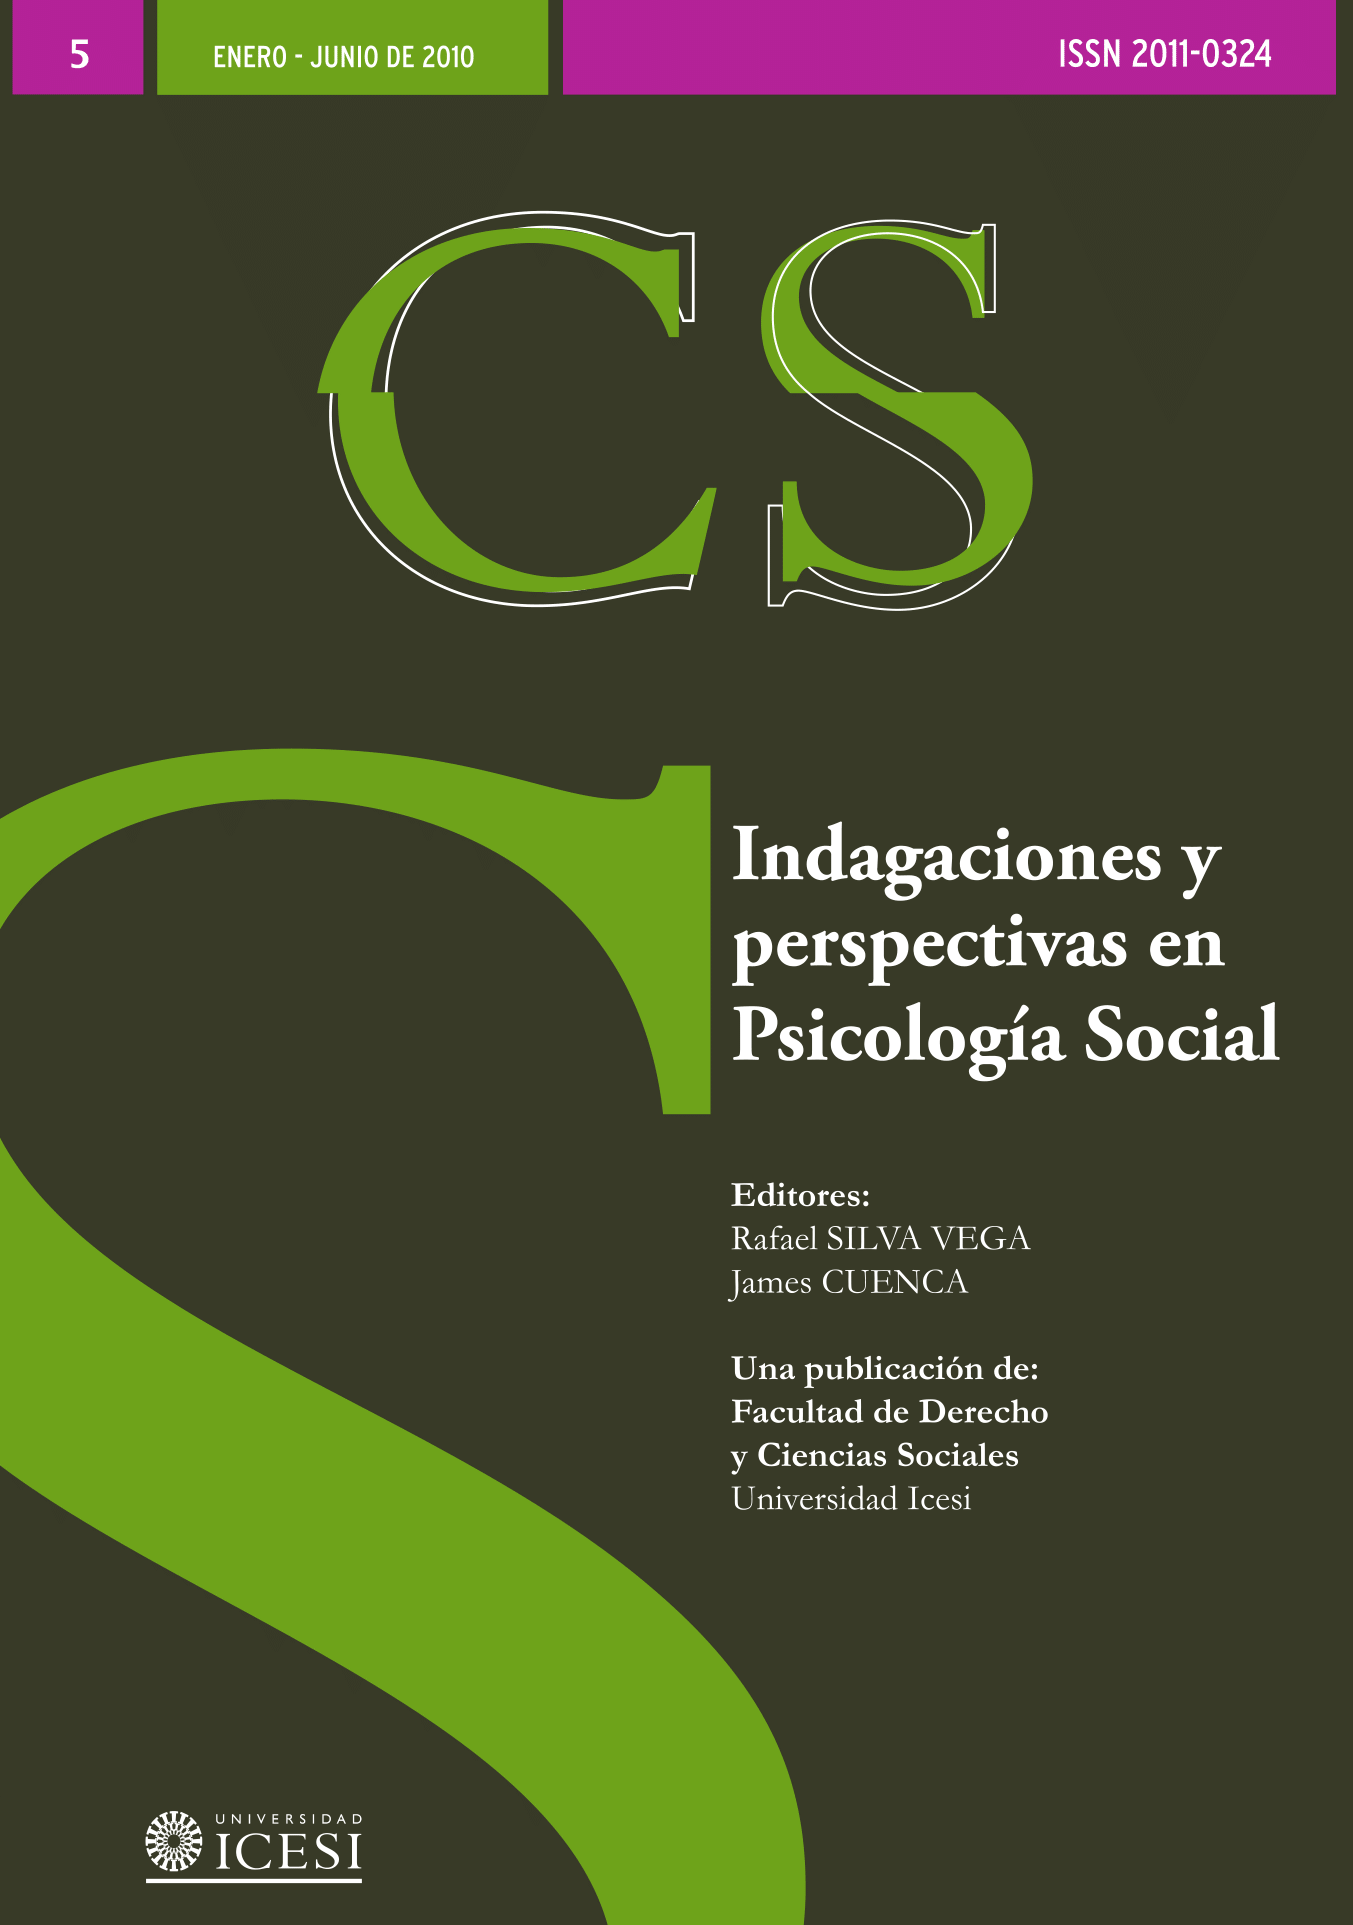 					Ver Núm. 5 (2010): No. 5, Enero-Junio (2010): Indagaciones y perspectivas en Psicología Social
				